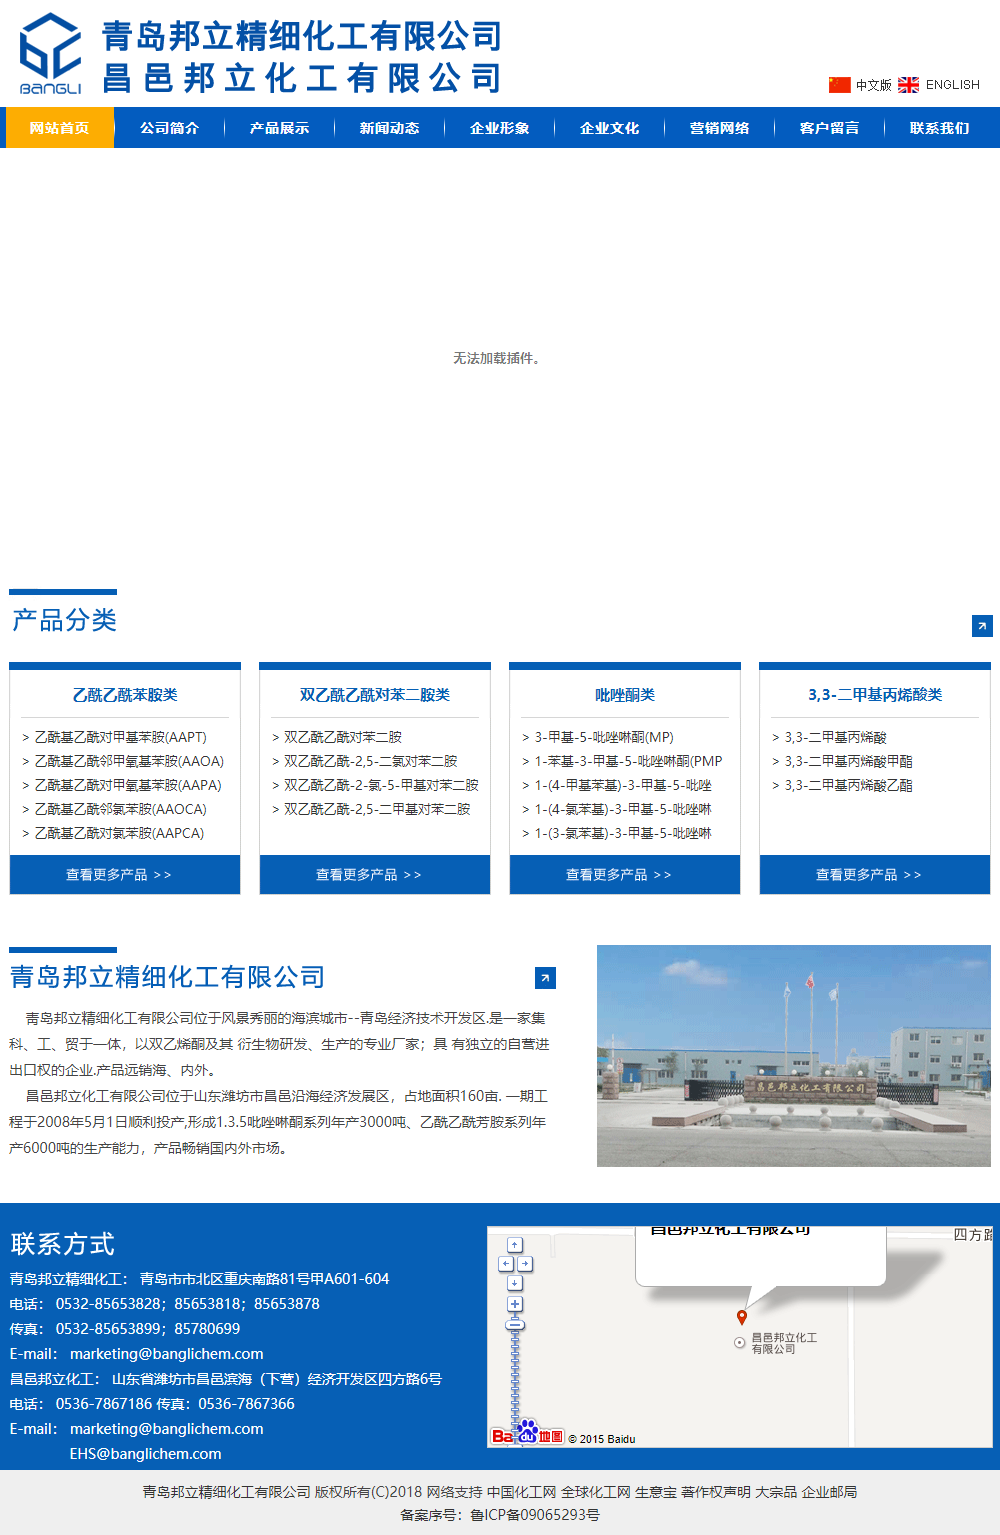 青岛邦立精细化工有限公司网站案例